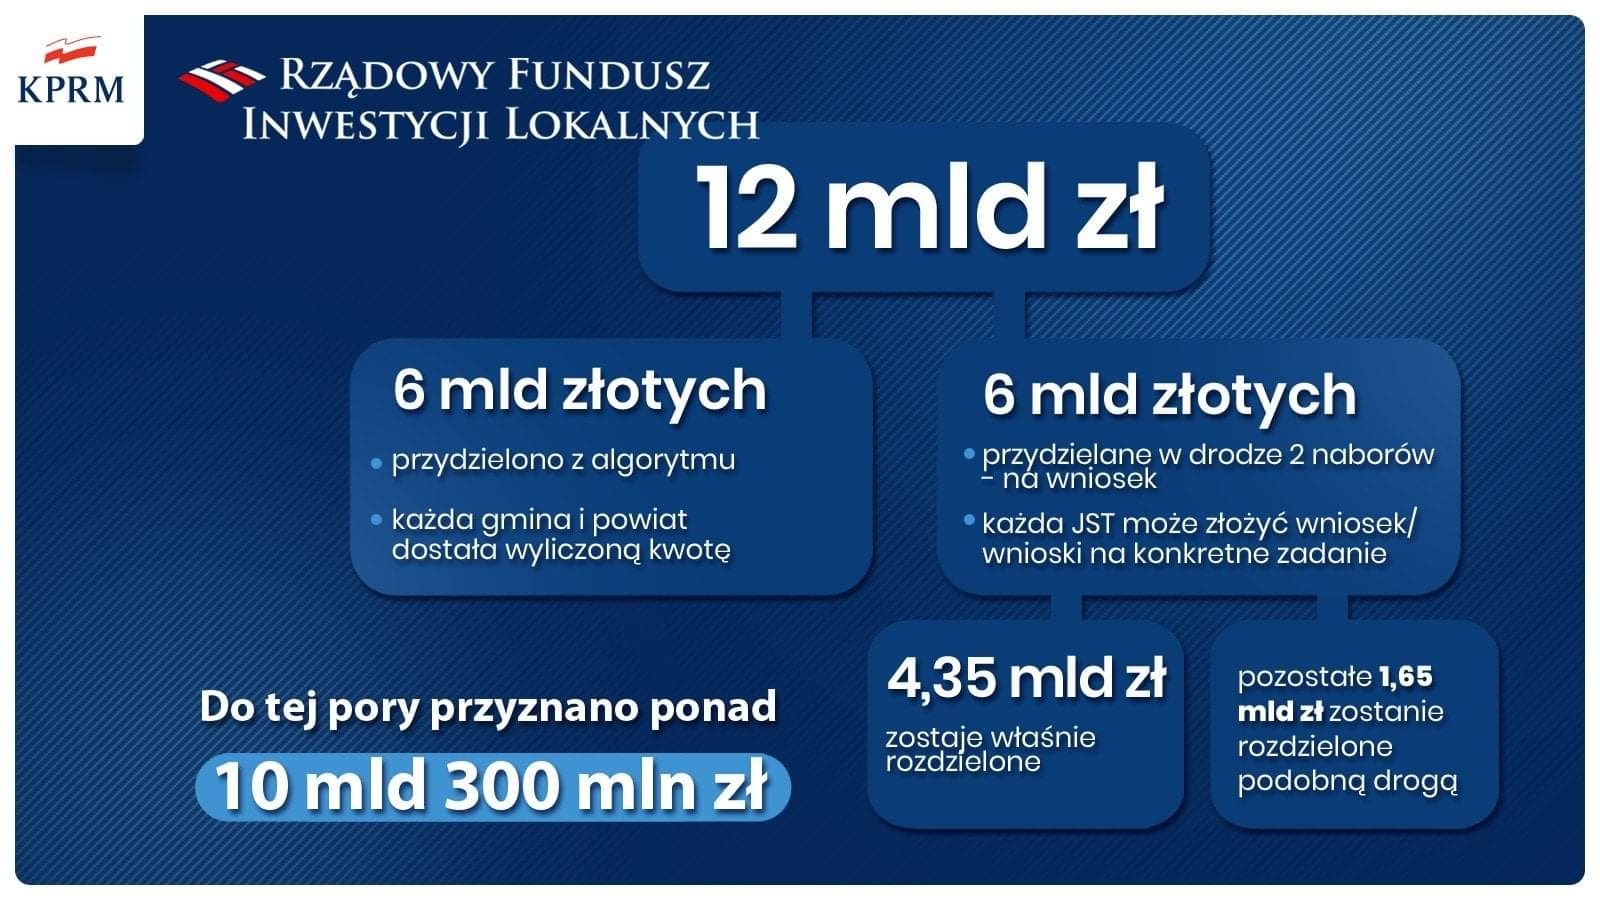 Ponad 13 mln zł z Rządowego Funduszu lnwestycji Lokalnych